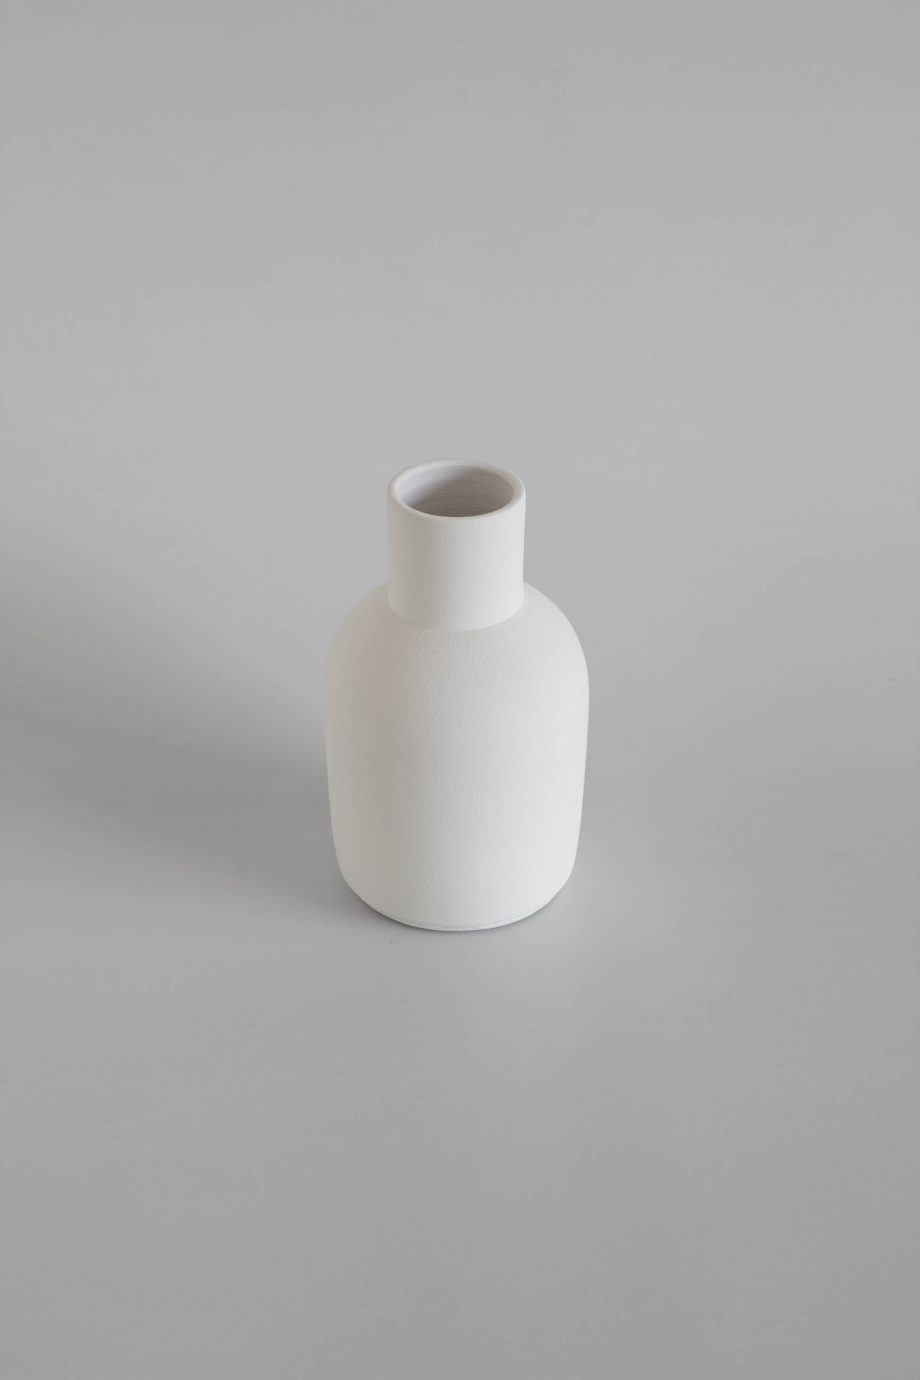 Dekorative weiße Vase der portugiesischen Marke für Wohnkultur o cactuu.